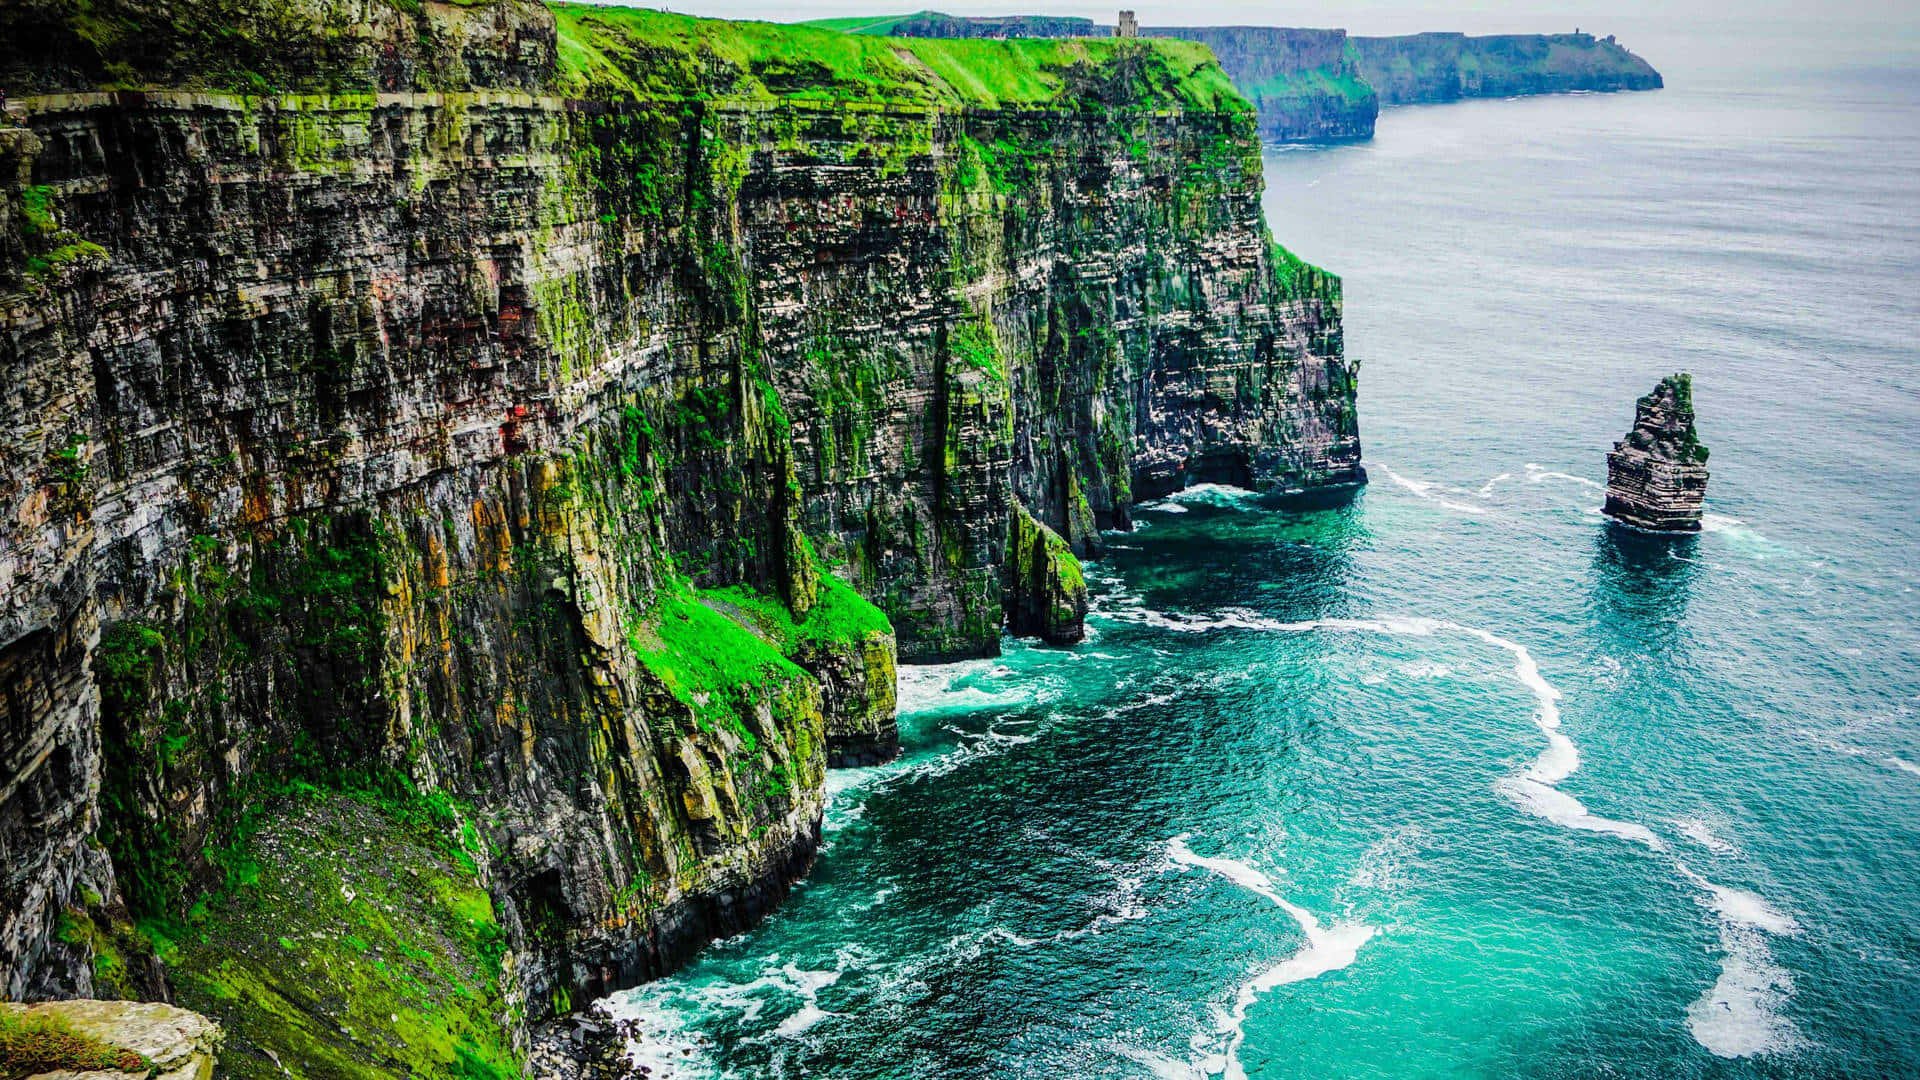 Tải hình nền desktop Ireland - Tải xuống những hình nền desktop Ireland từ Wallpapers.com để thấy được vẻ đẹp tuyệt vời của Emerald Isle. Với những bức ảnh độ phân giải cao và đa dạng về cảnh quan, bạn sẽ được chiêm ngưỡng những khu rừng xanh ngắt, đại dương rộng lớn hay những dãy núi đầy màu sắc. Hãy tận hưởng và trải nghiệm những thứ tuyệt vời này trên màn hình desktop của bạn.